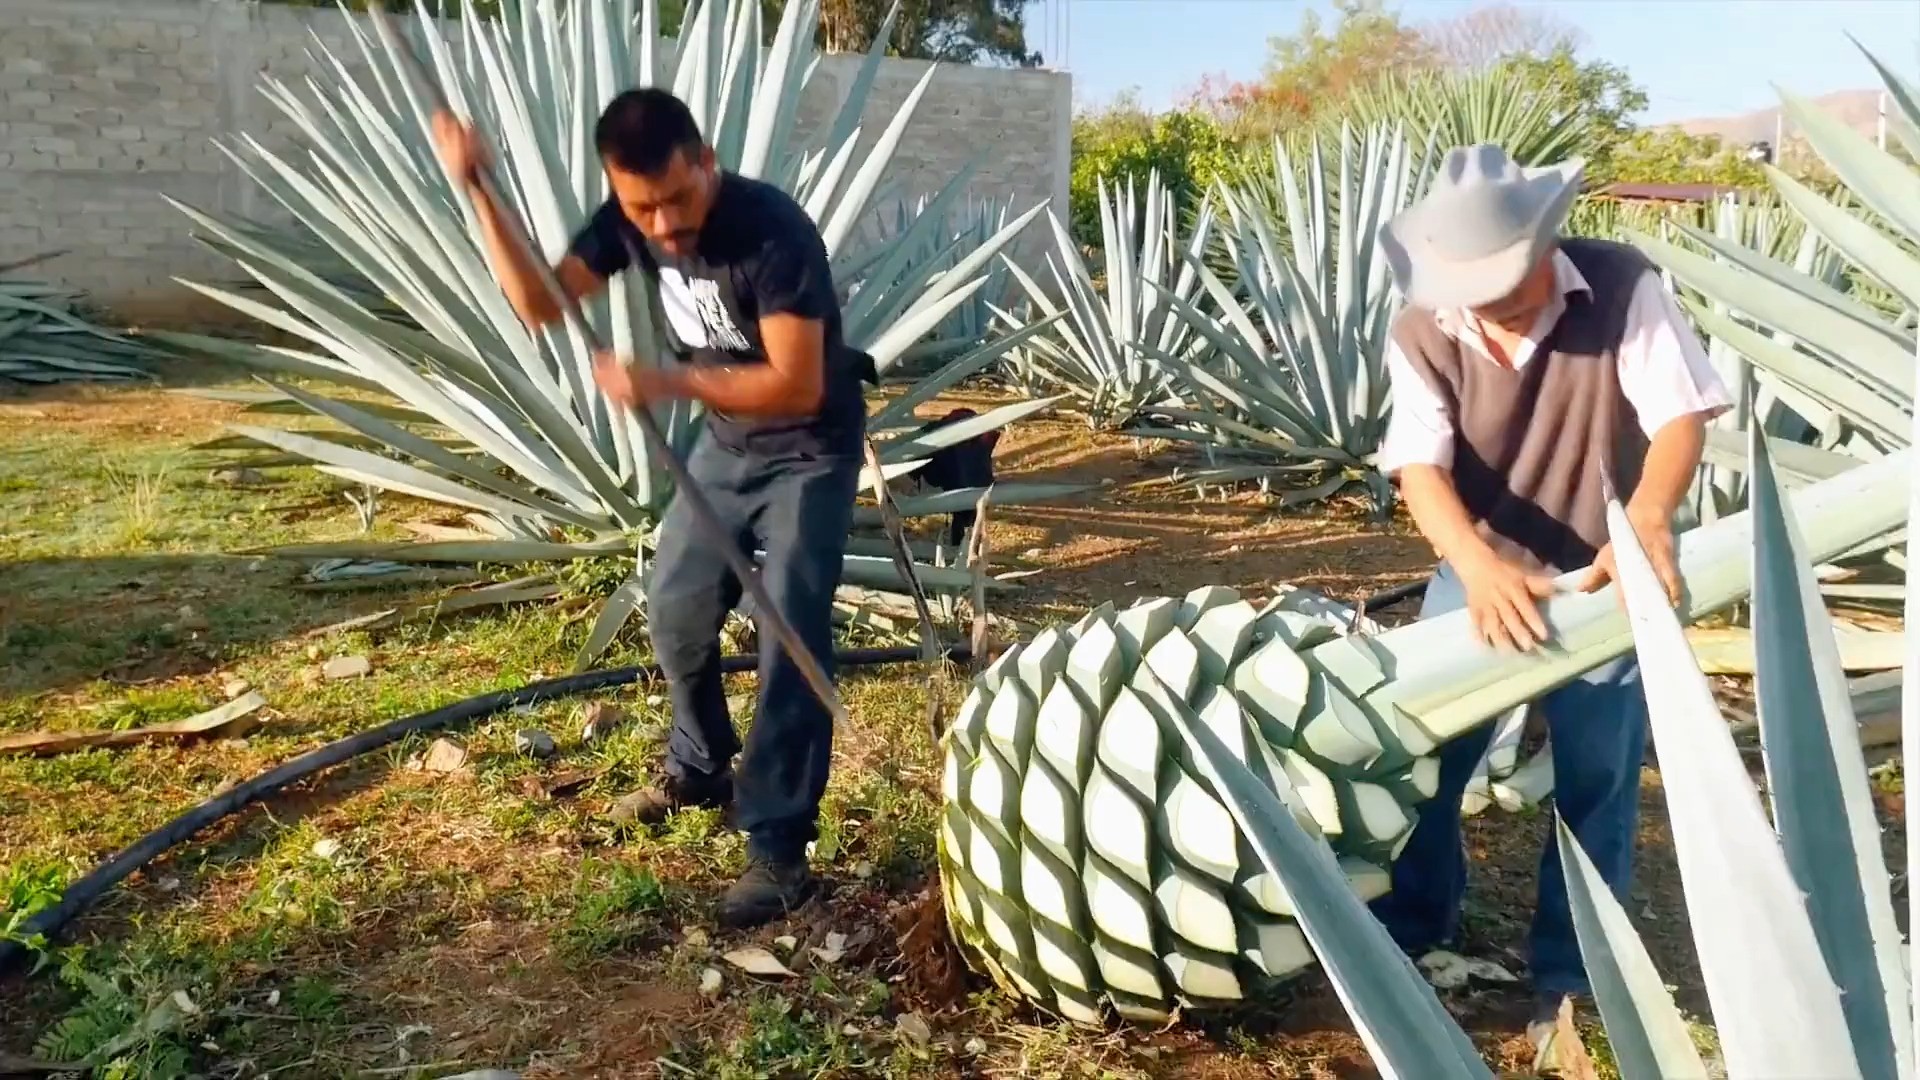 巨型“菠萝”是怎么酿酒的？墨西哥的灵魂，龙舌兰酒。 #龙舌兰 #龙舌兰酒生产过程 # #酒知识.mp4

